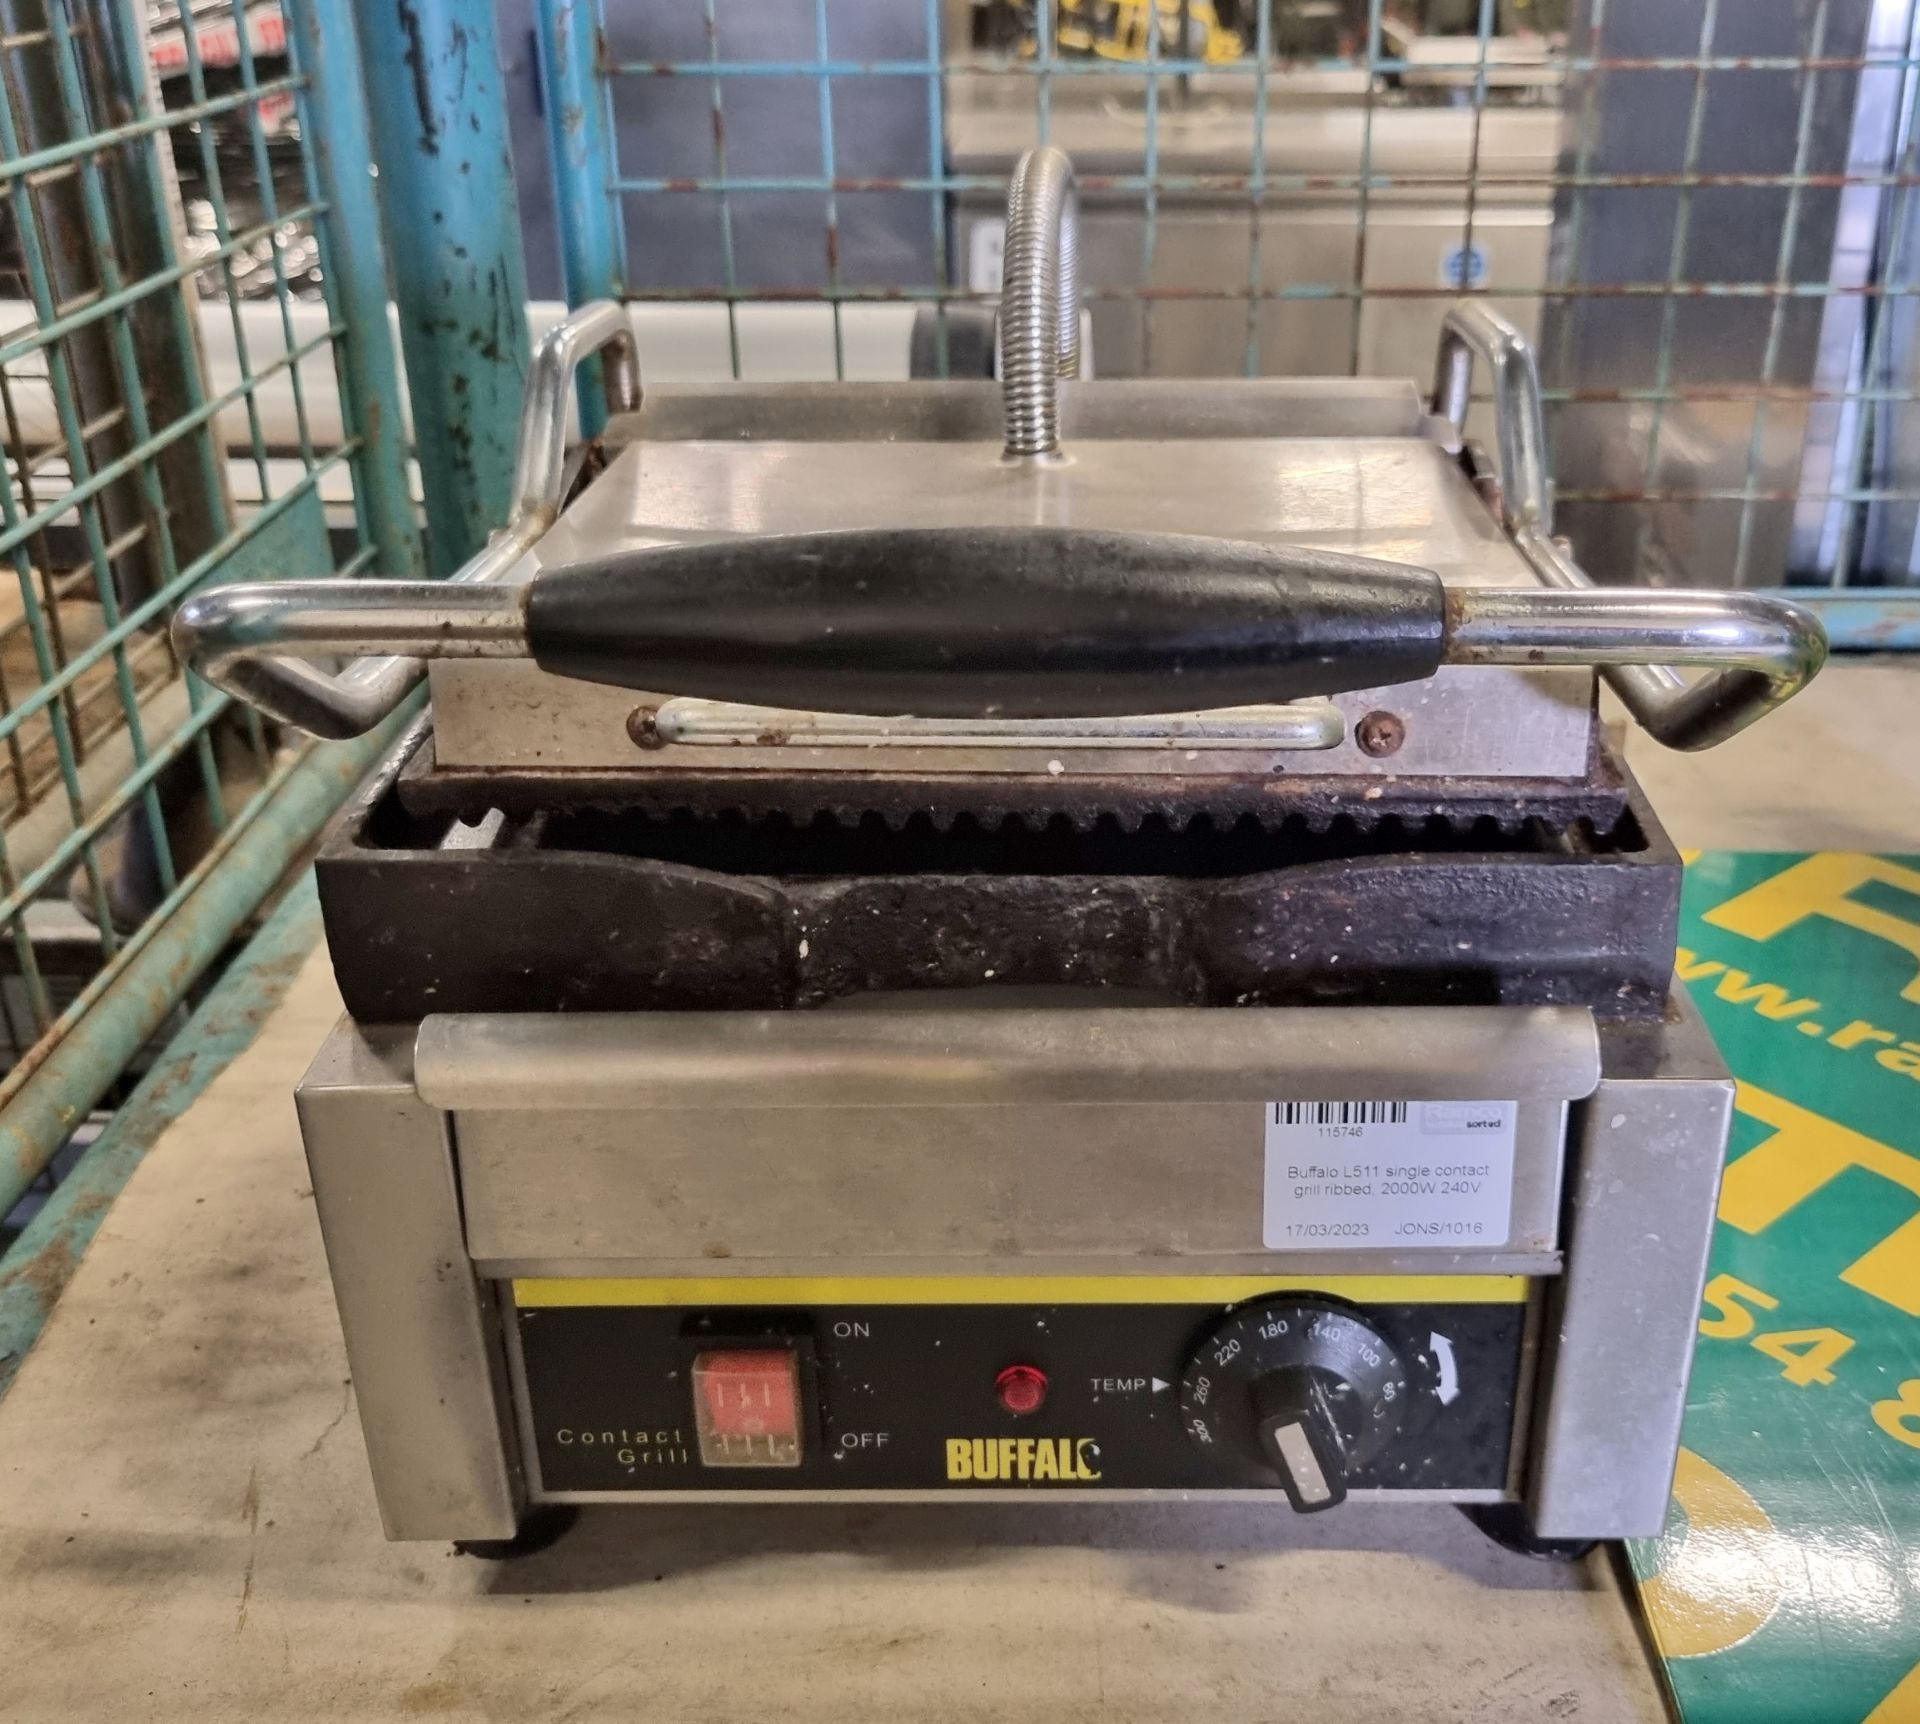 Buffalo L511 single contact grill ribbed - 2000W - 240V